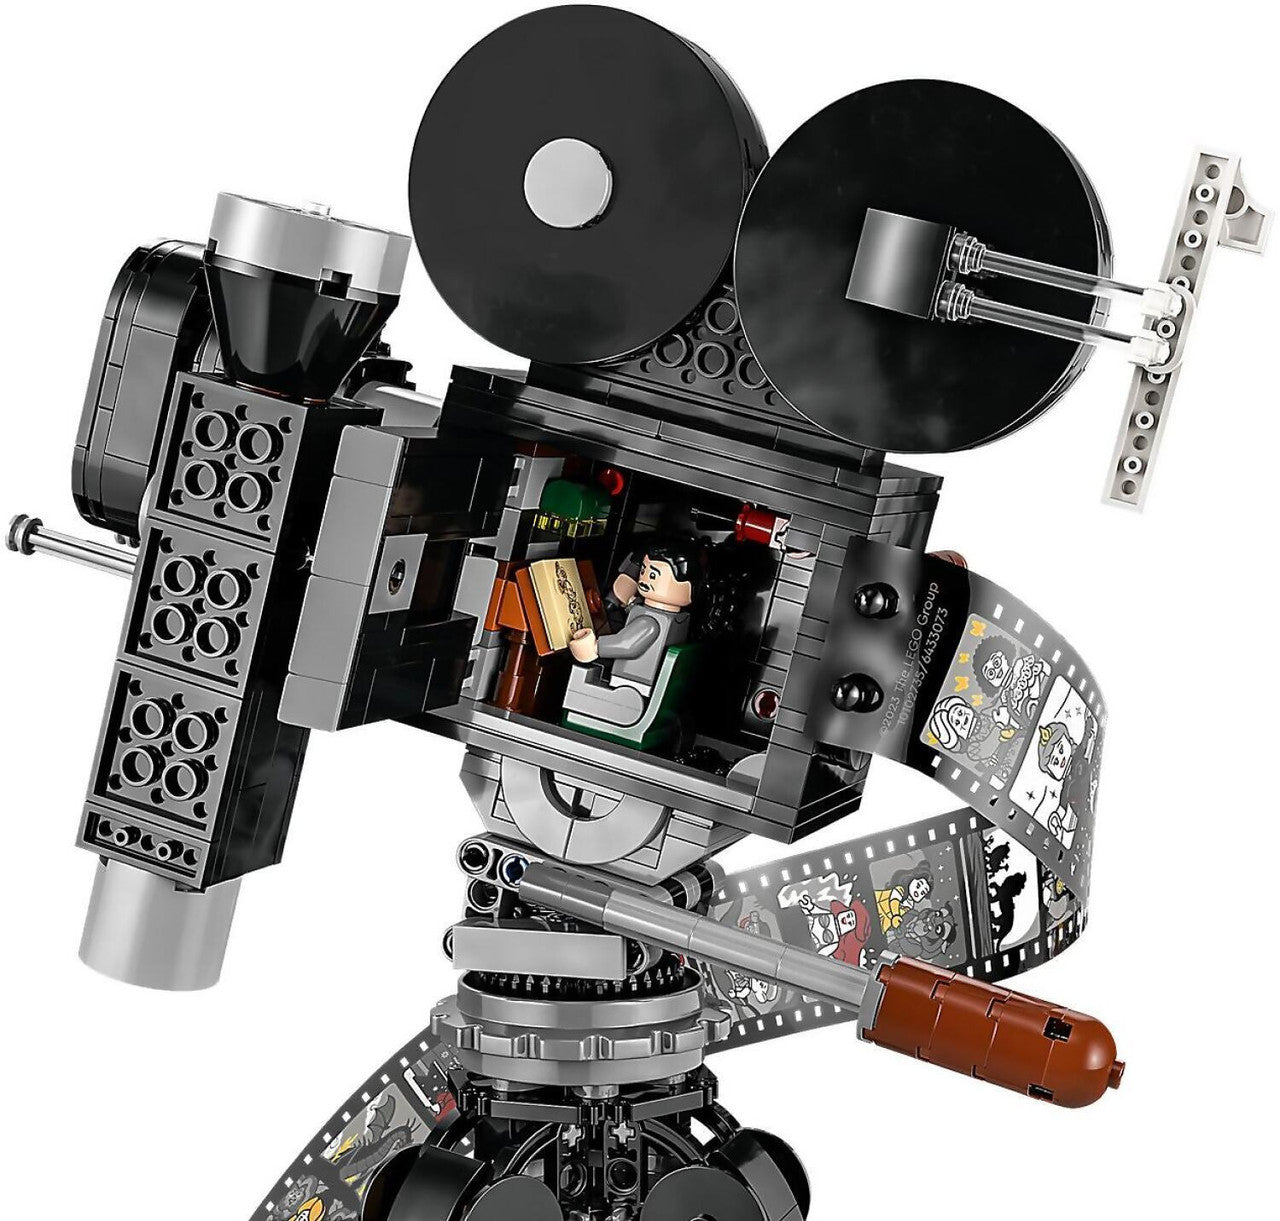 LEGO Disney Walt Disney Camera 43230